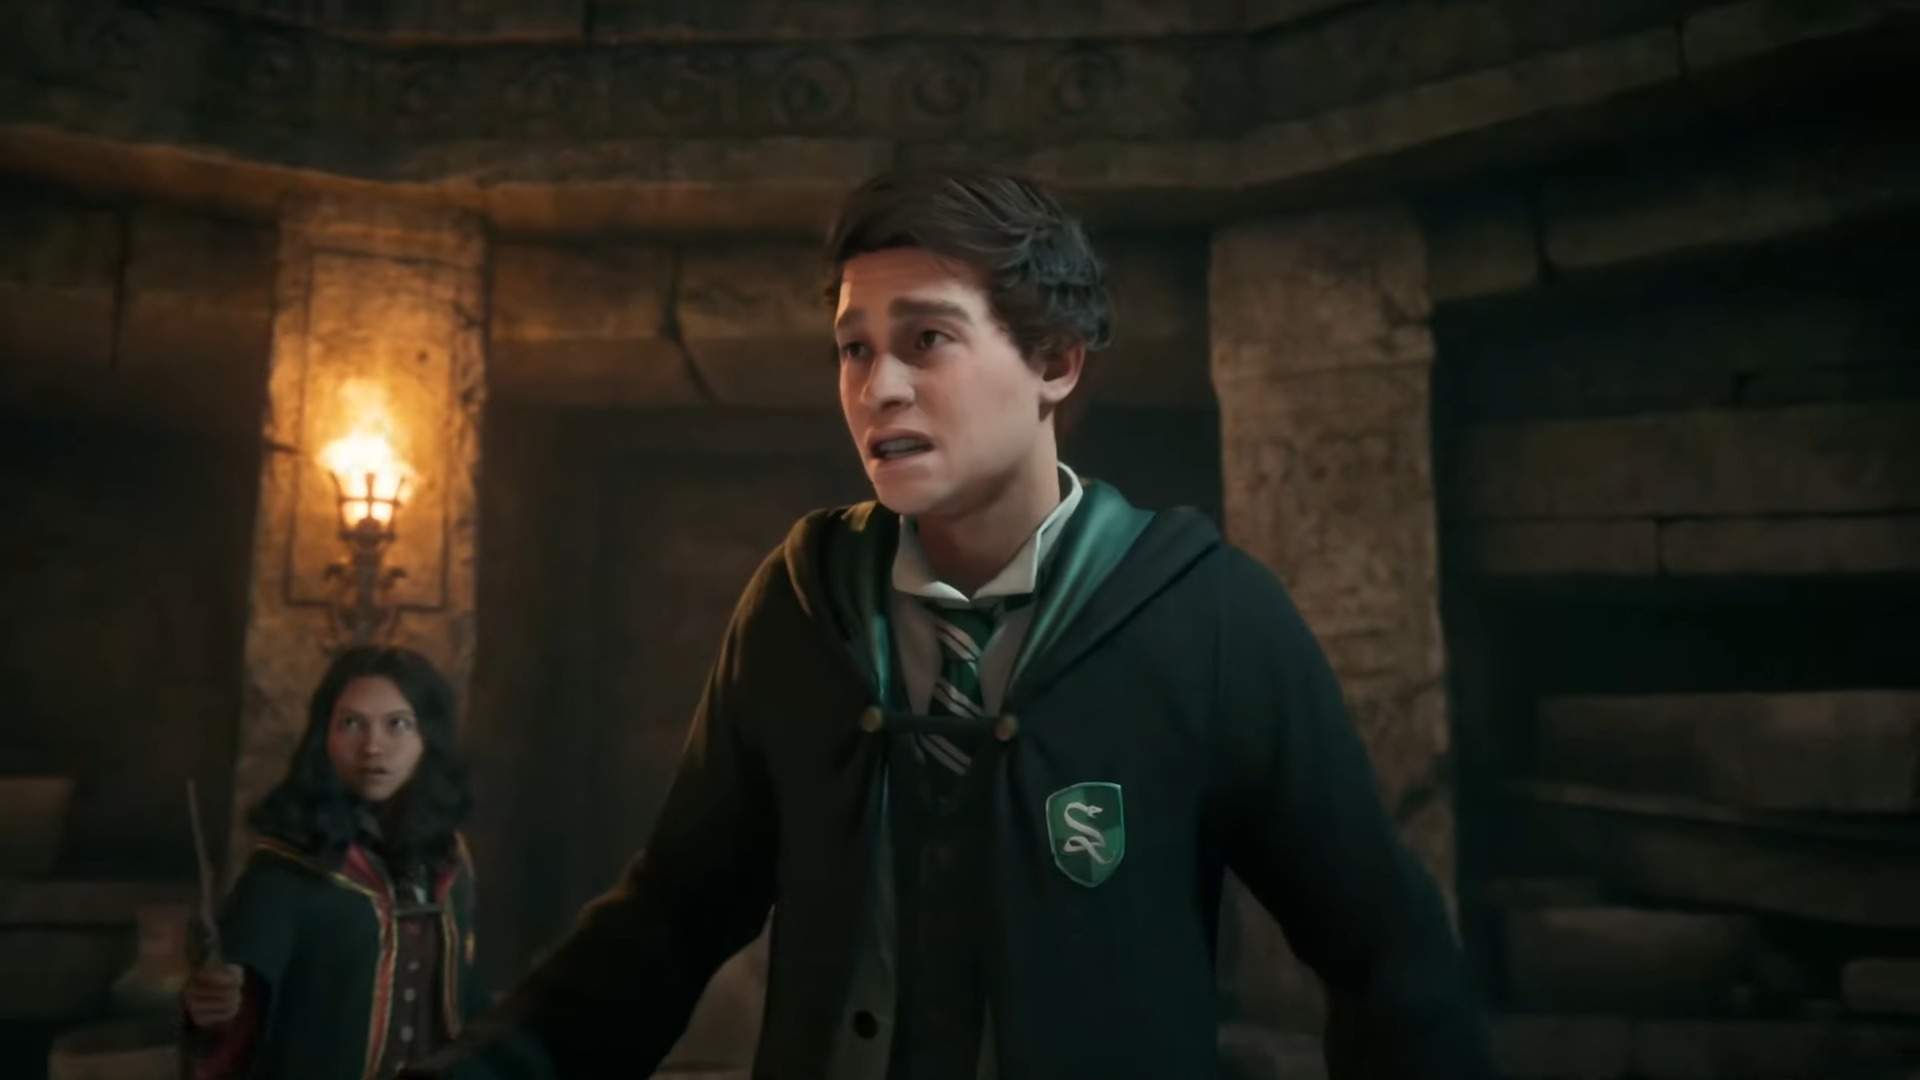 Hogwarts Legacy  Assista ao trailer de lançamento do jogo